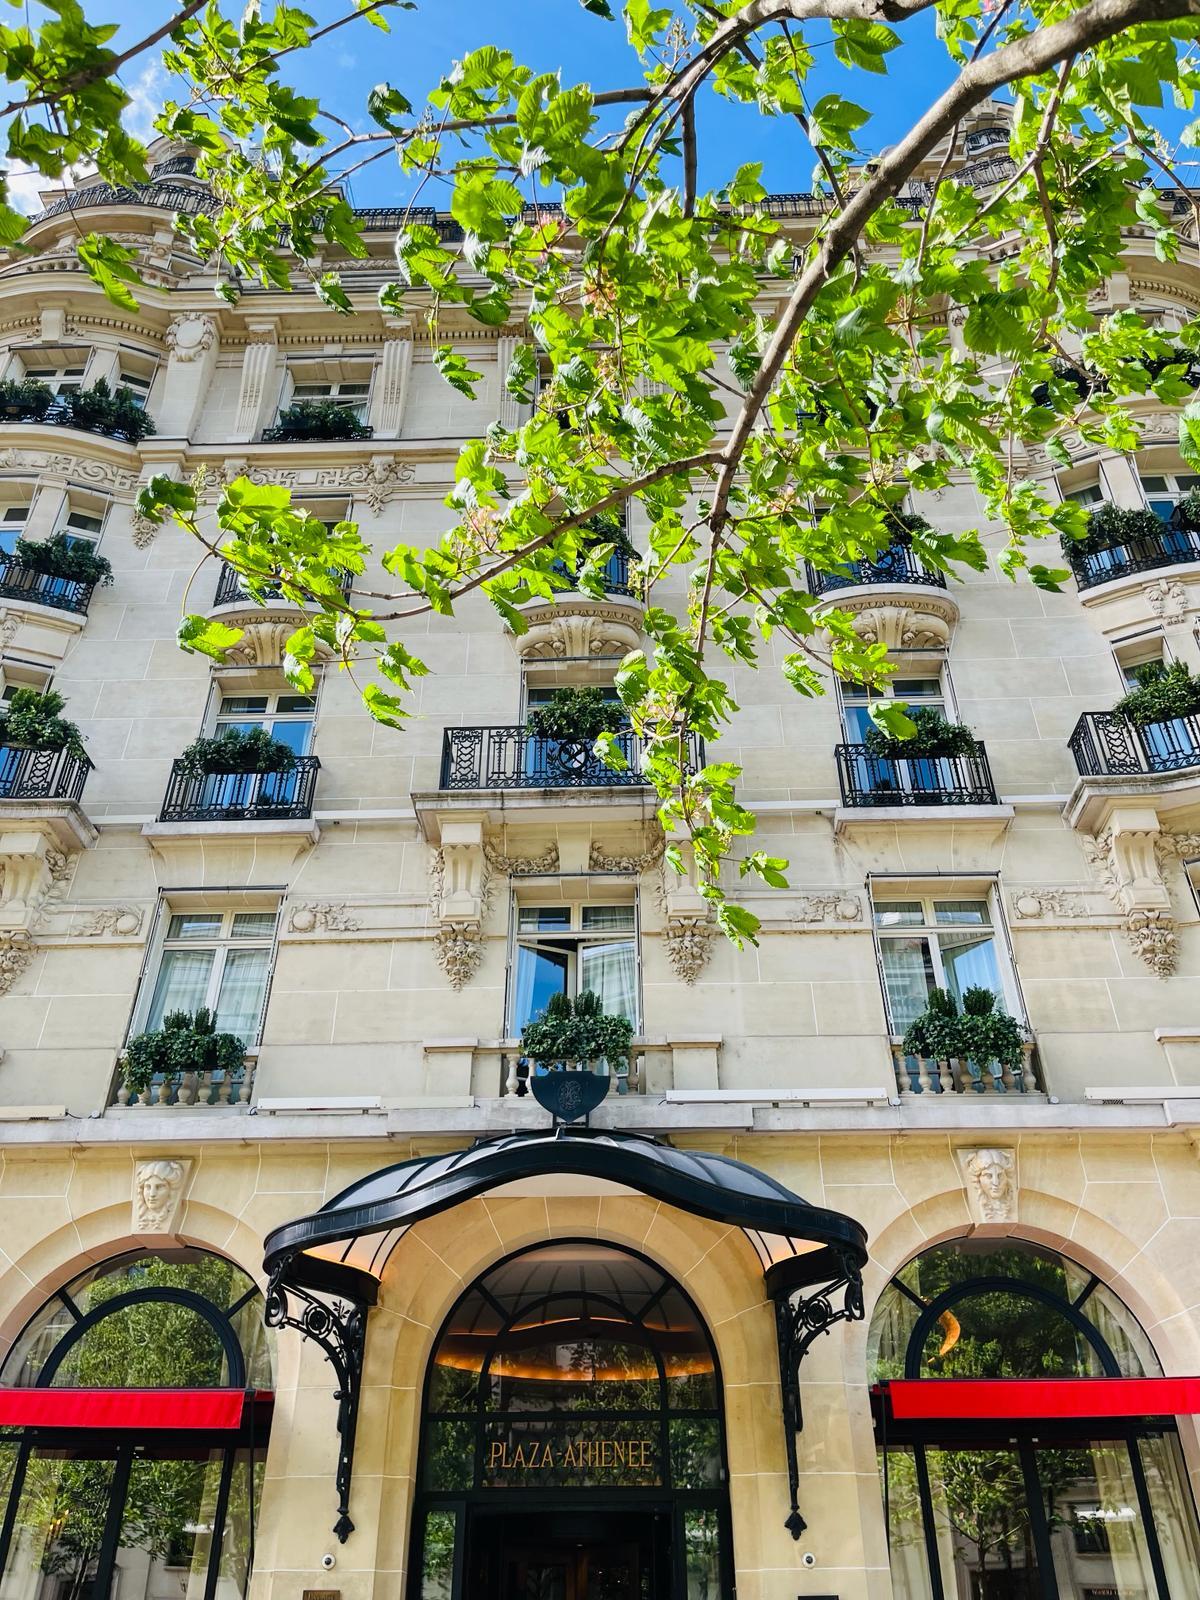 For sale real estate transaction in city Paris Ile-de-France